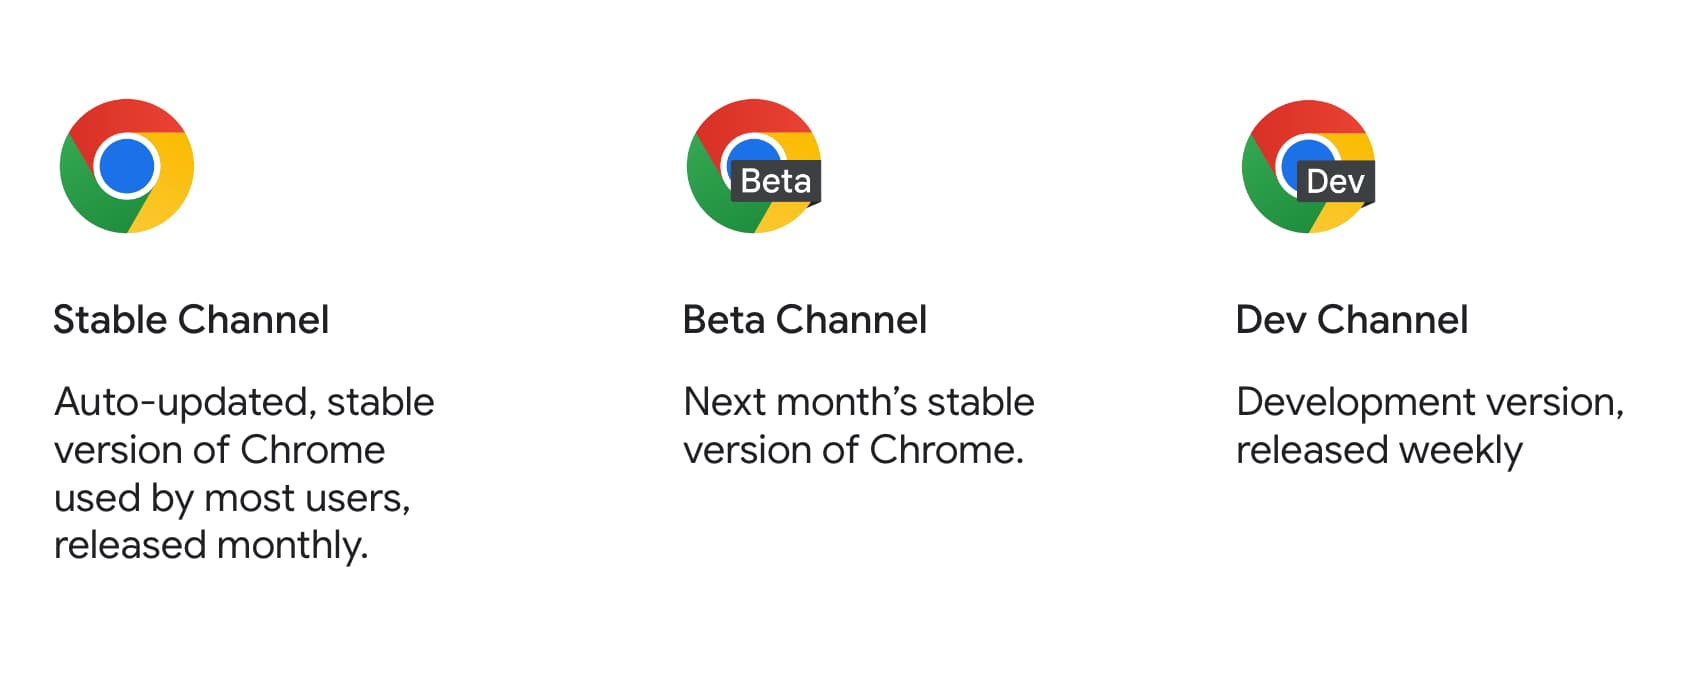 Chrome 공개 버전, 베타, 개발자의 제품 아이콘과 설명